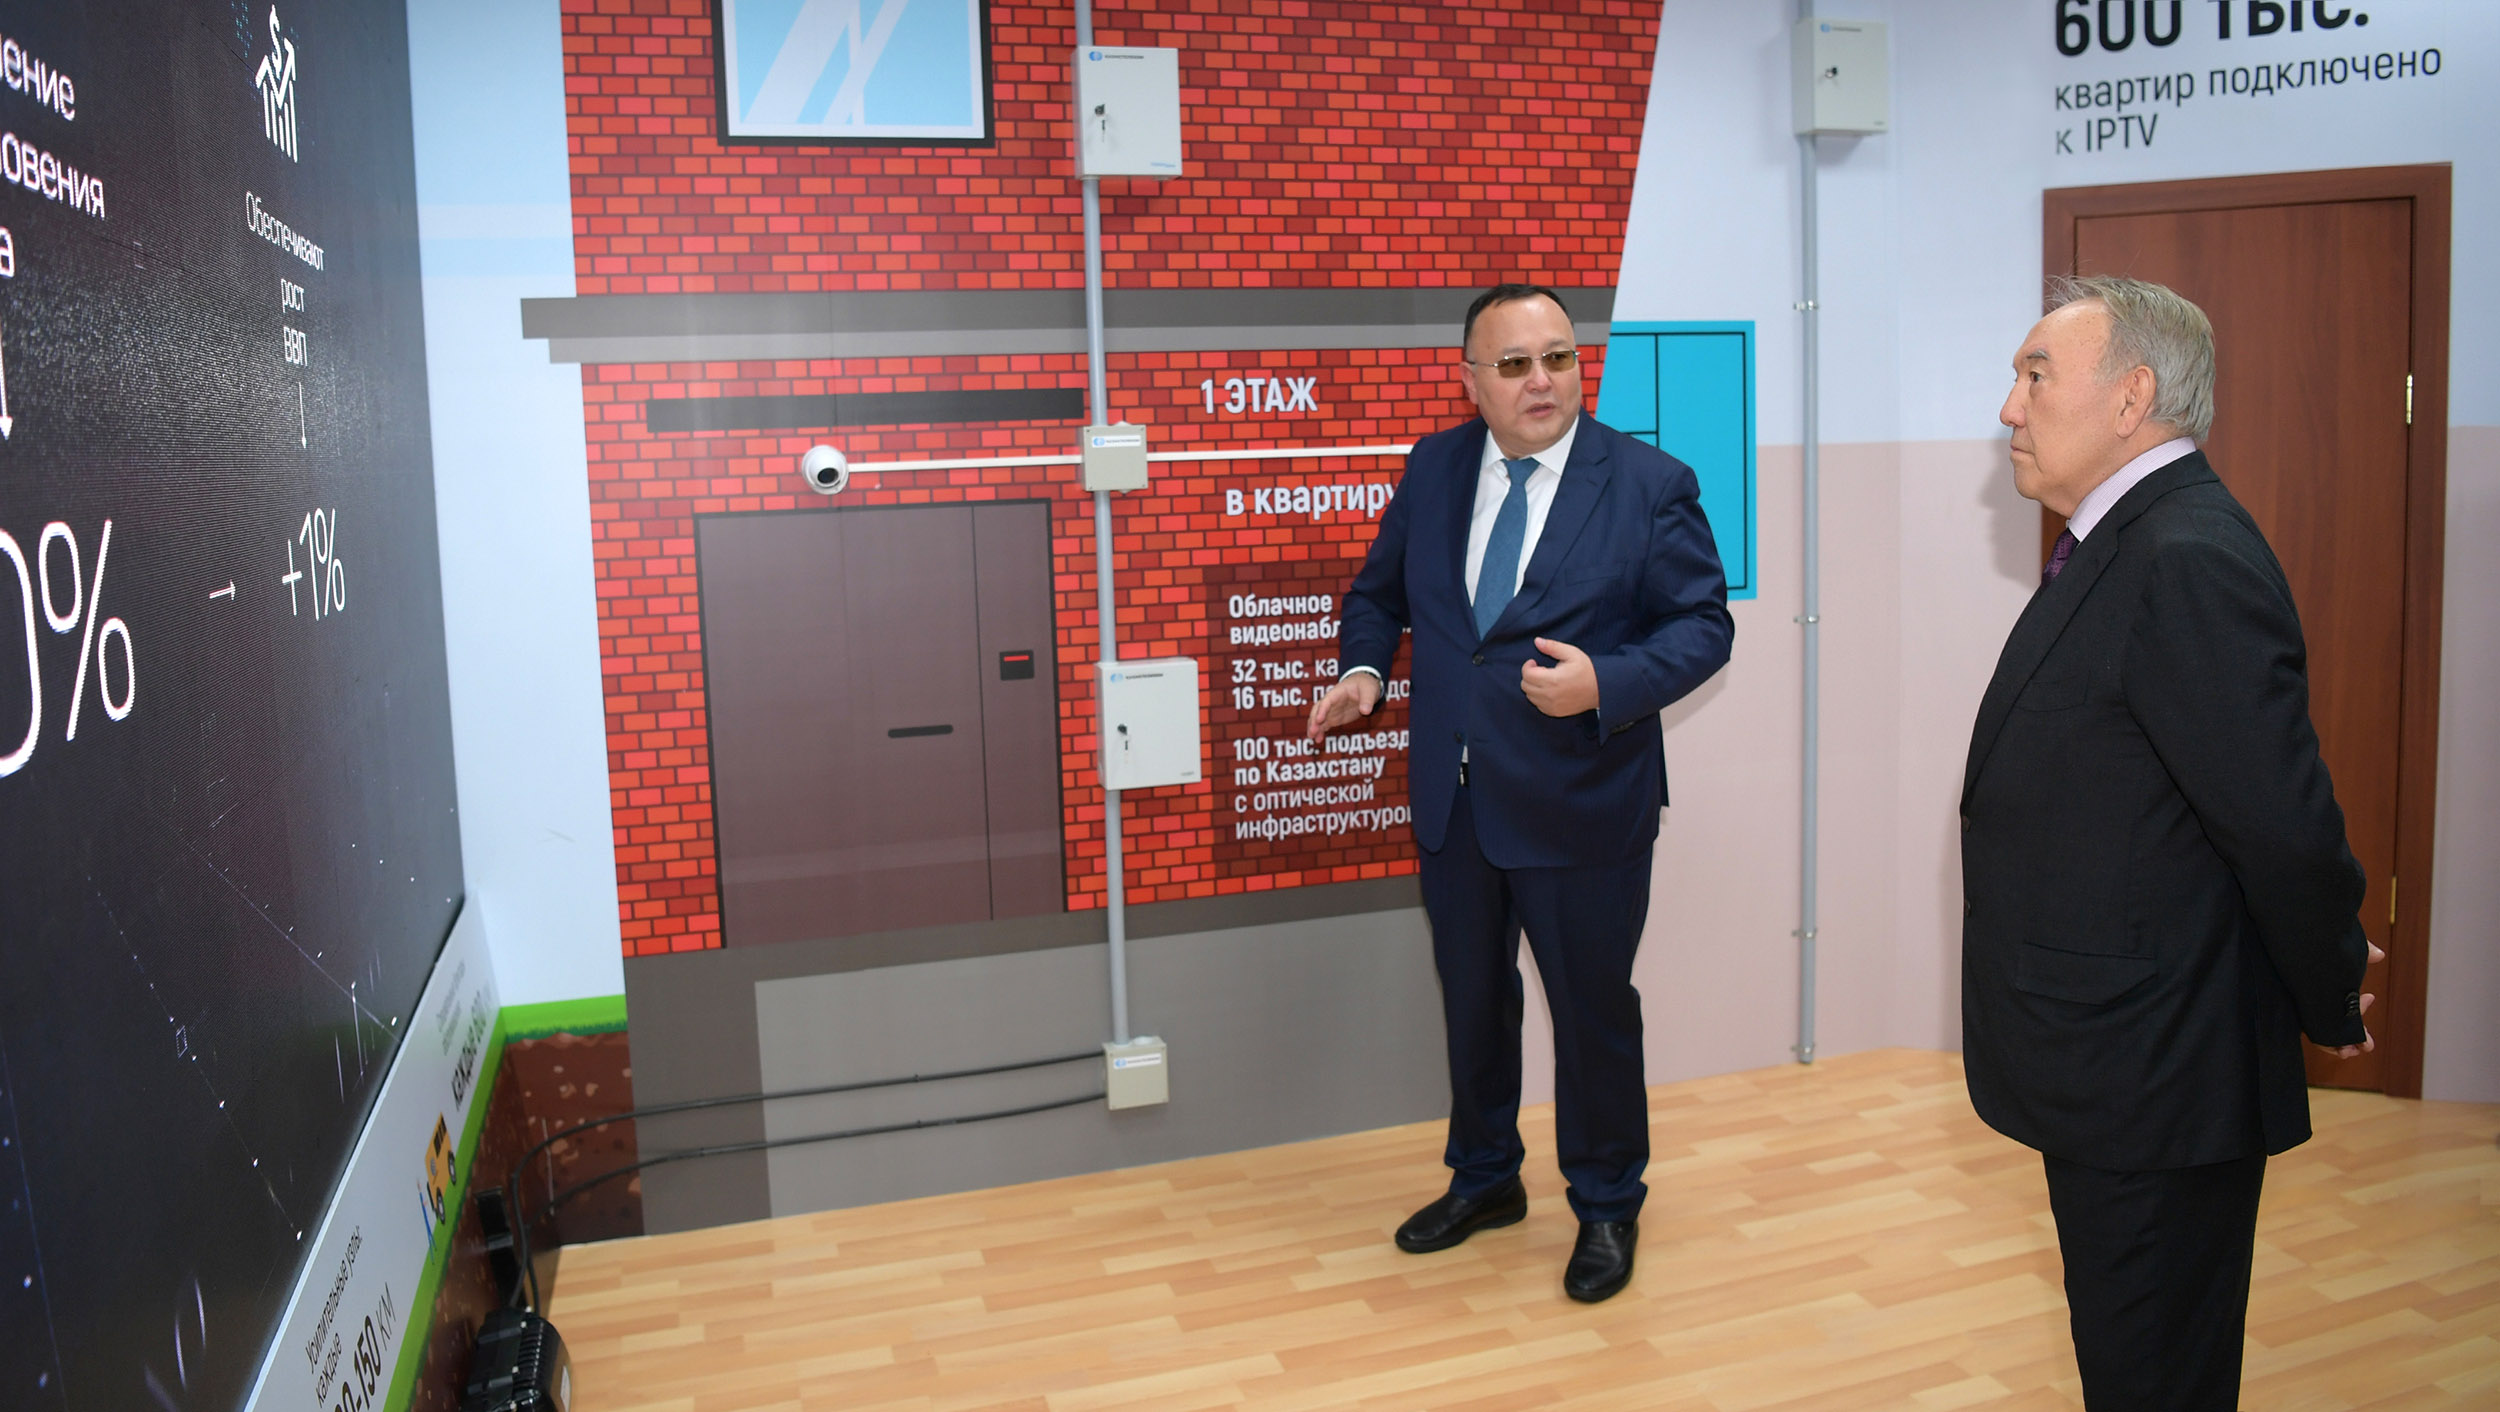 Нурсултан Назарбаев посетил Центр обработки данных АО "Казахтелеком" в Акколе